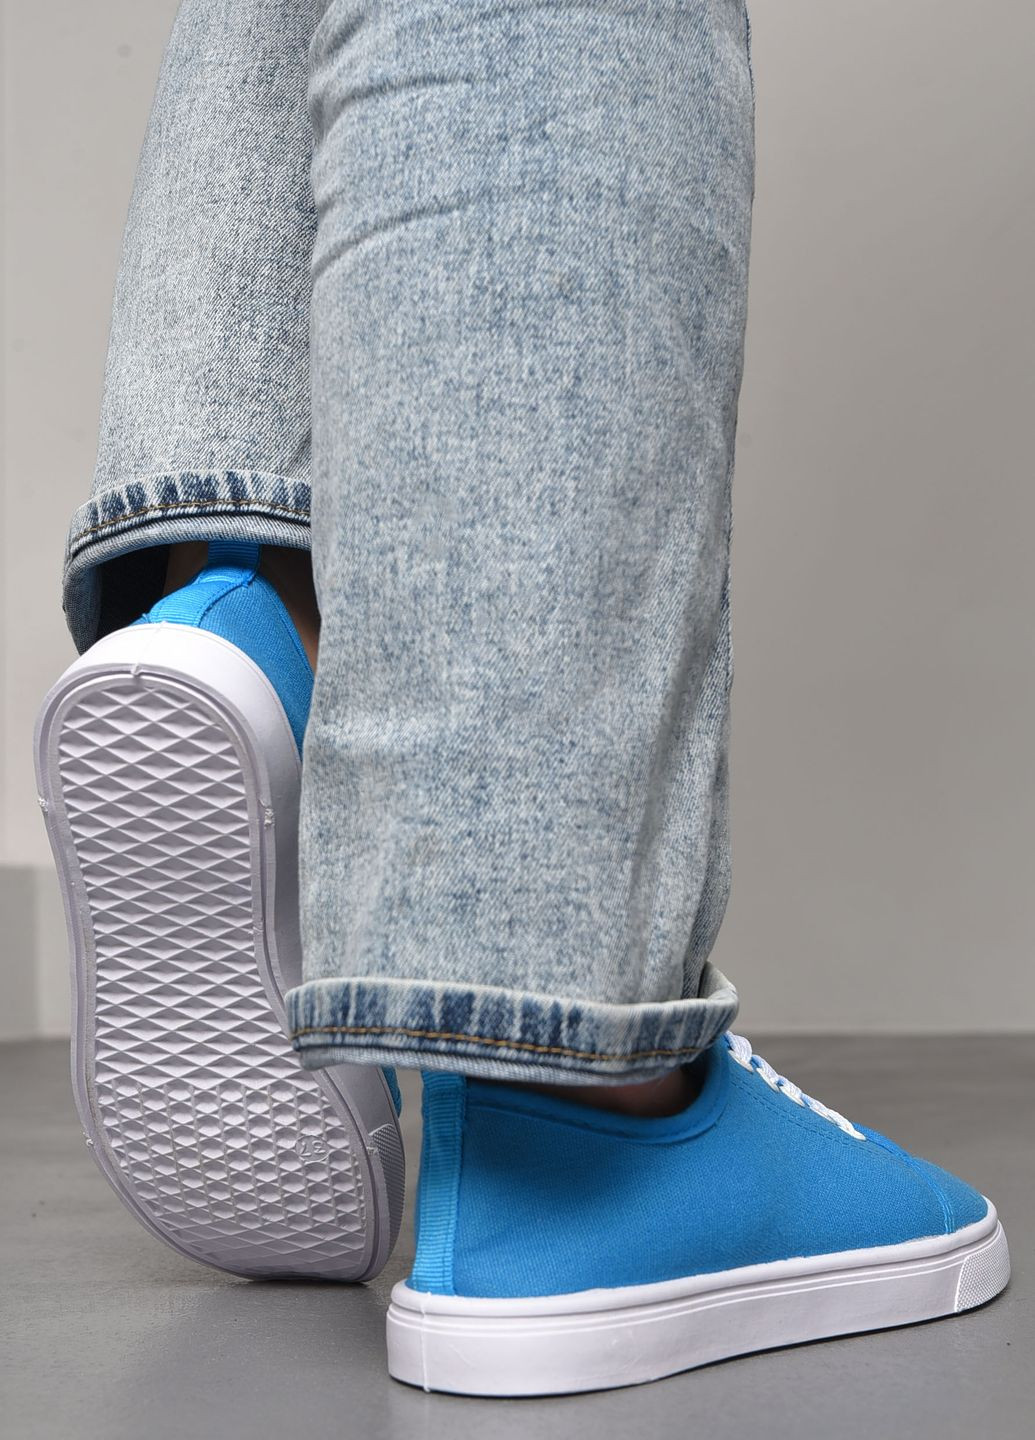 Голубые мокасины женские голубого цвета на шнуровке Let's Shop